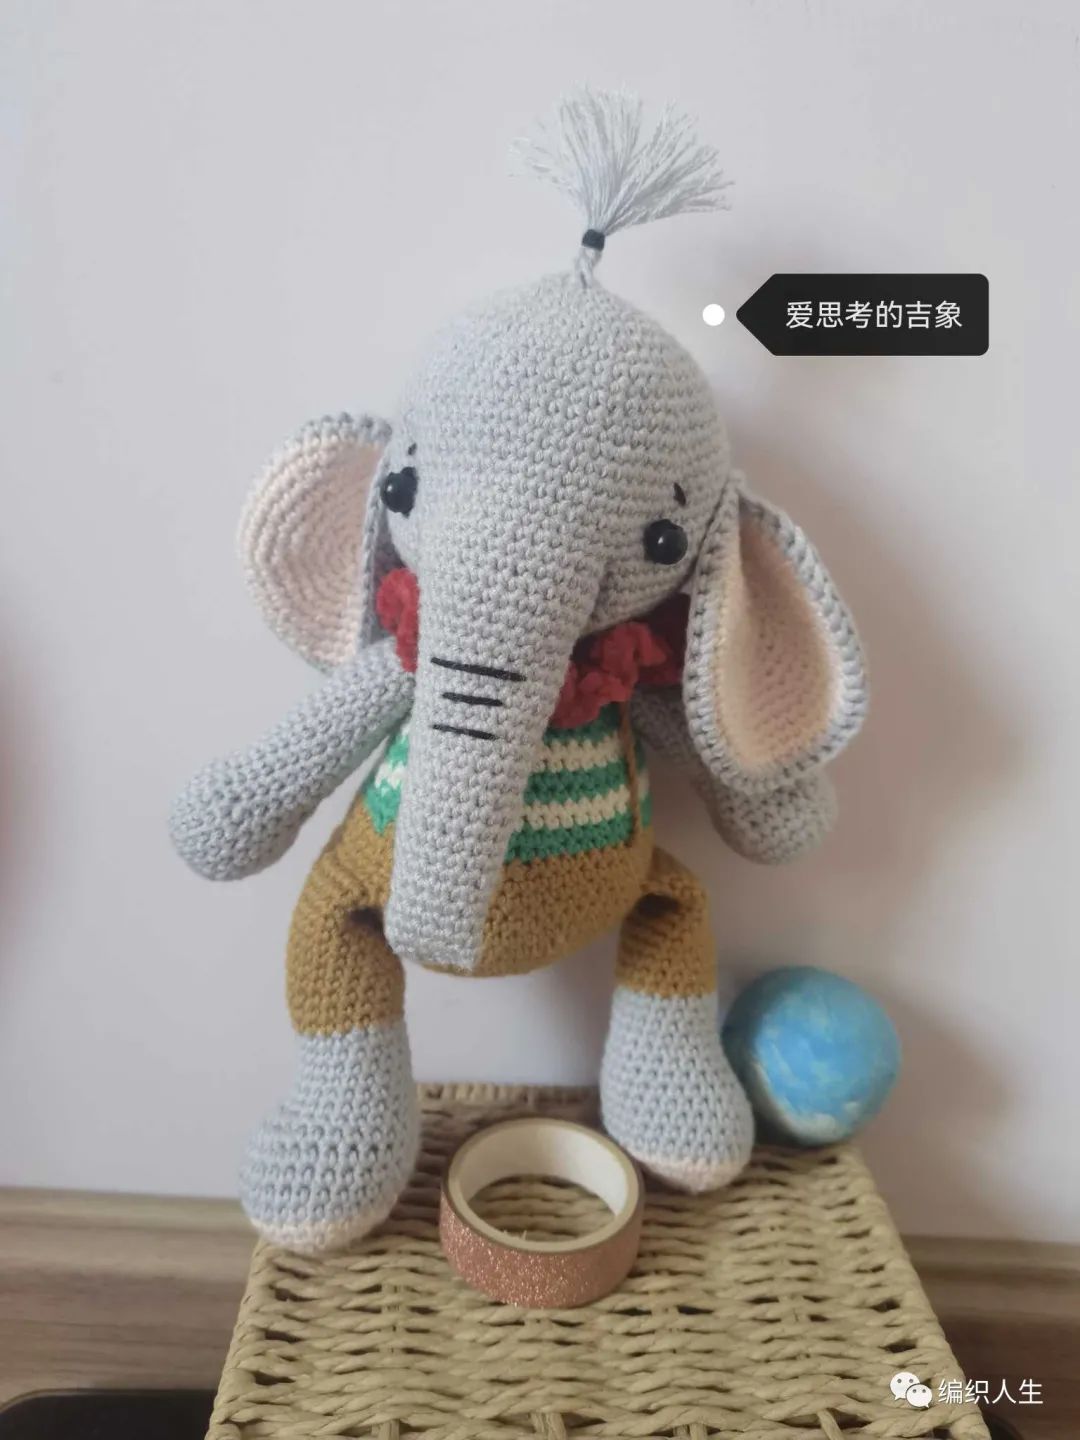 公益2021爱思考的吉象：娃娃家2.0大象玩偶（有编织图解）